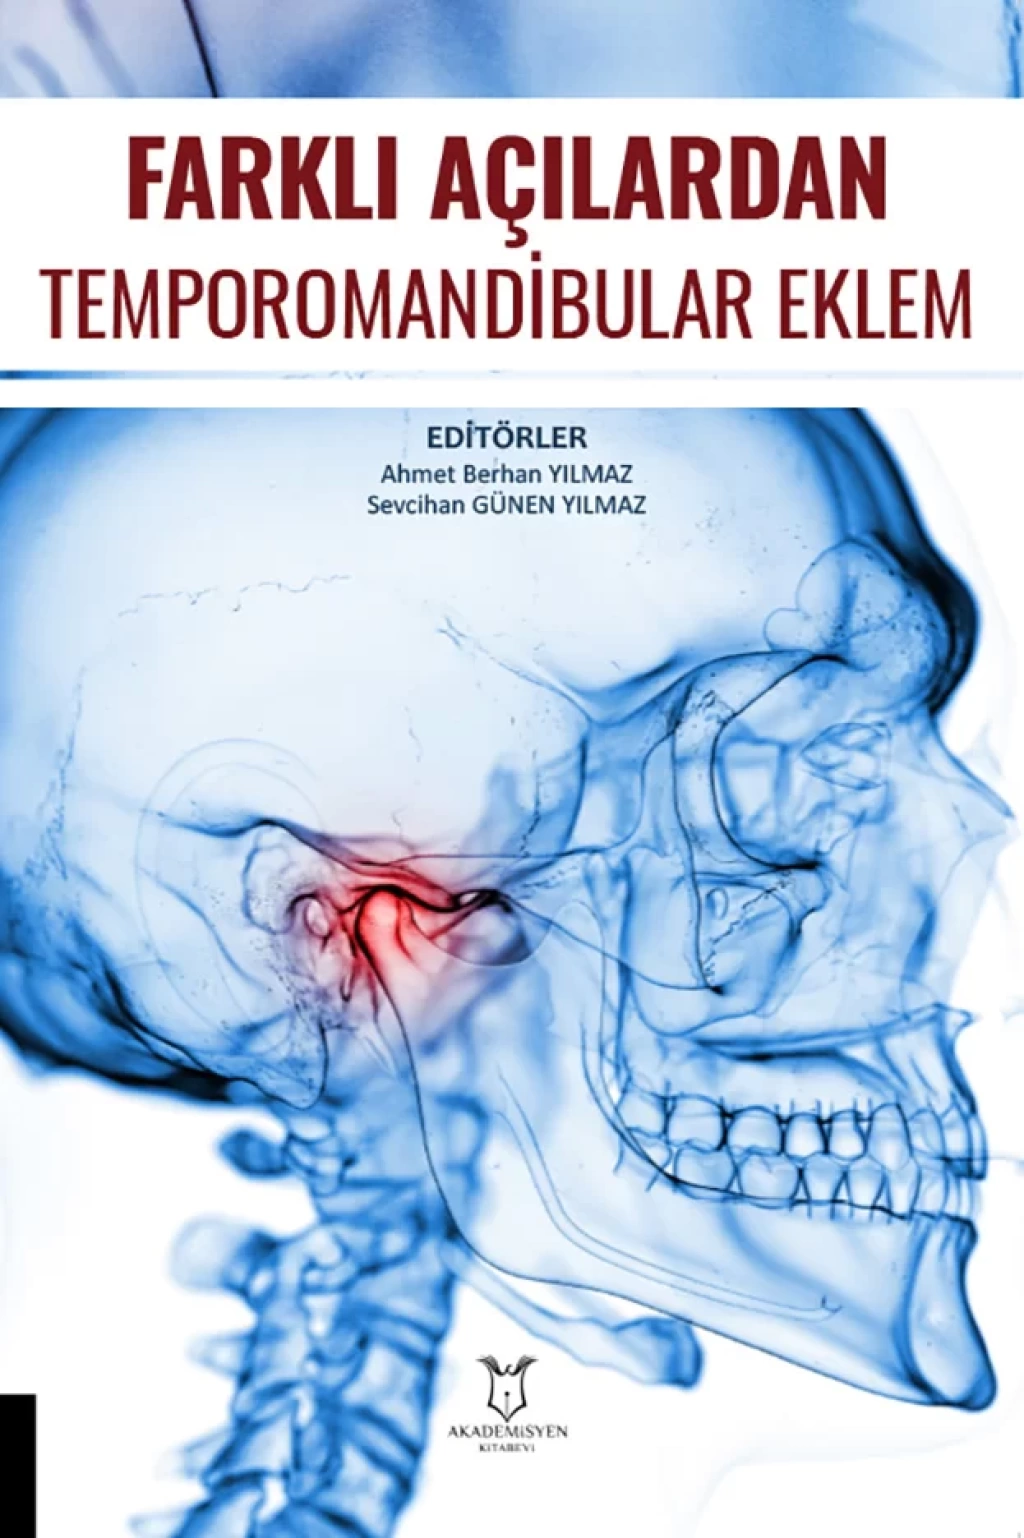 Farkli-Acilardan-Temporomandibular-Eklem